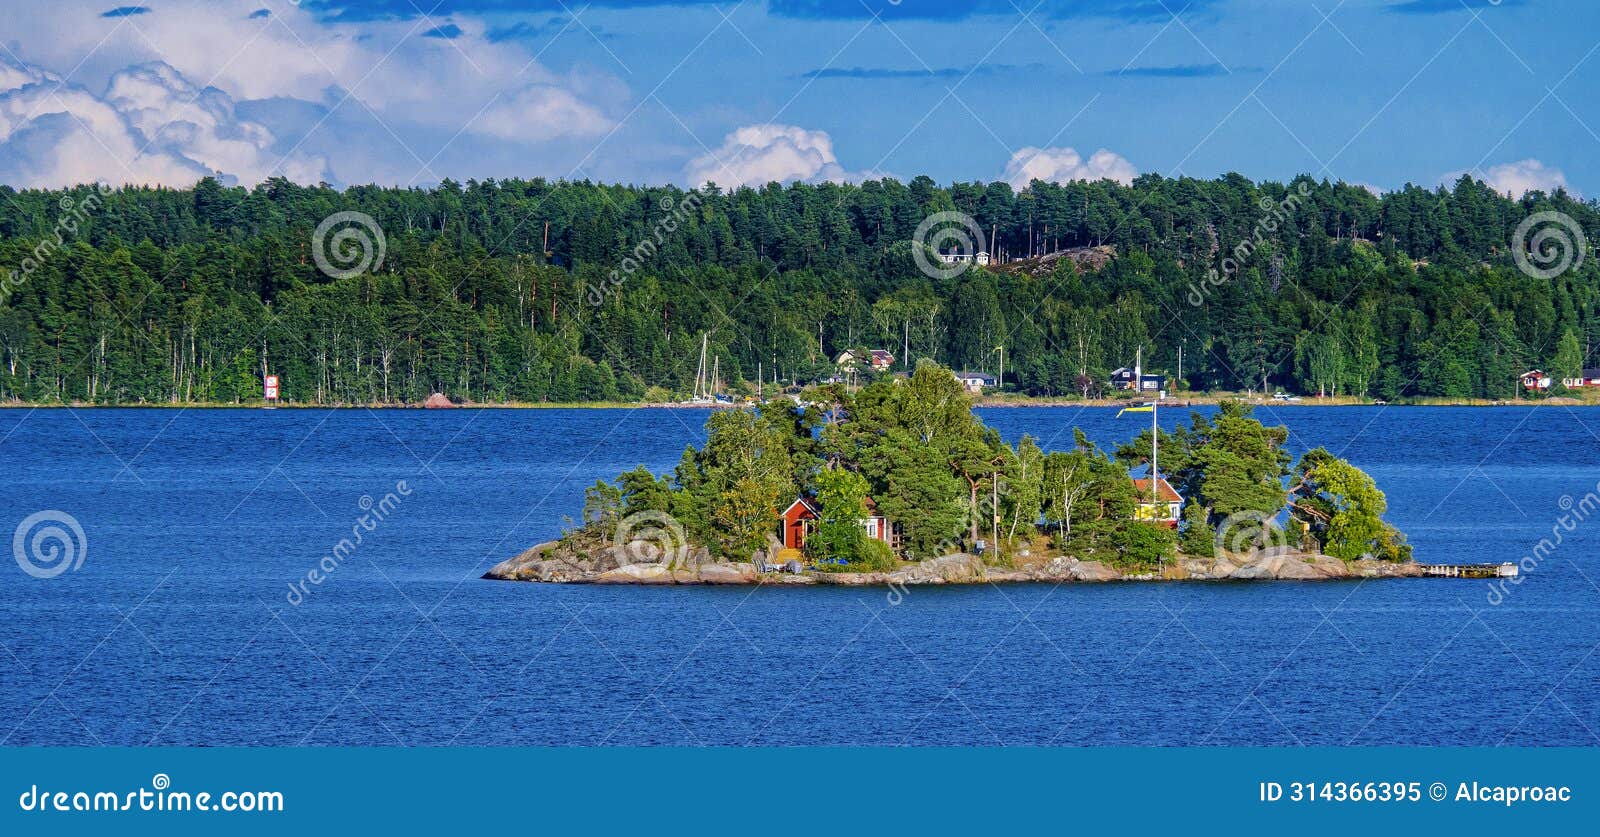 stockholm archipielago, sweden